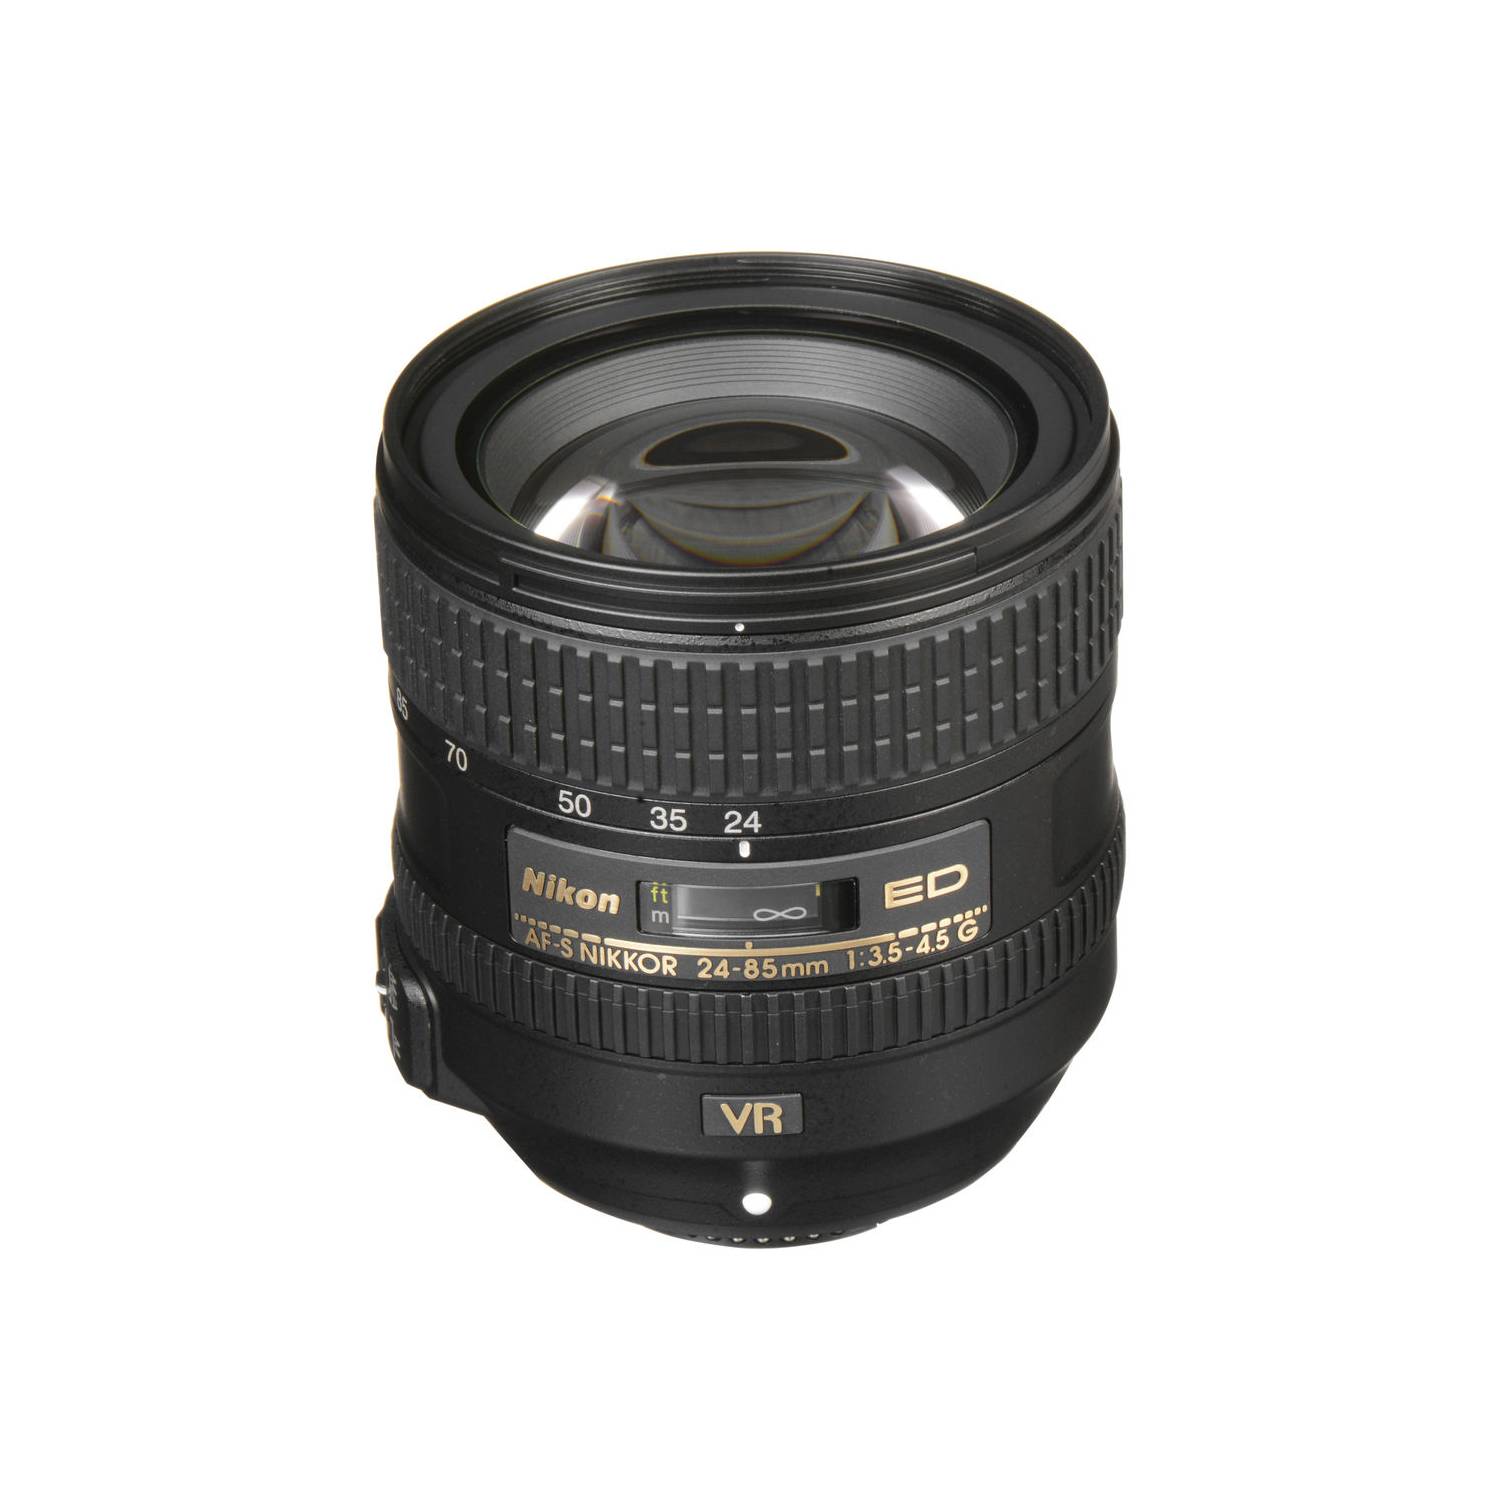 AF-S NIKKOR 24-85mm f/3.5-4.5G ED VR - レンズ(ズーム)